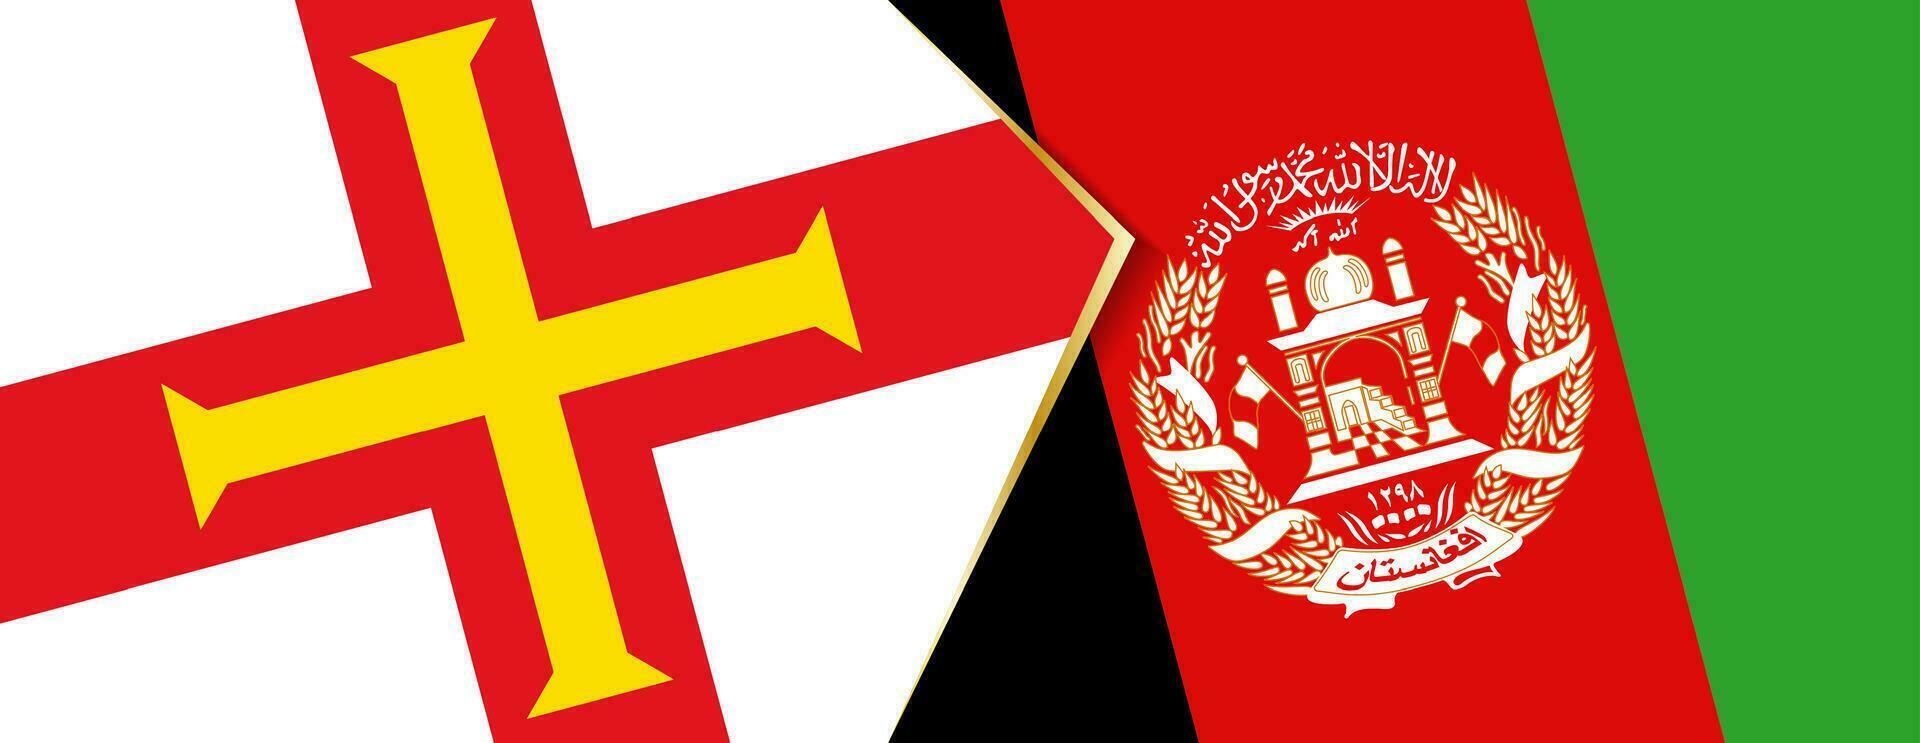 guernsey y Afganistán banderas, dos vector banderas